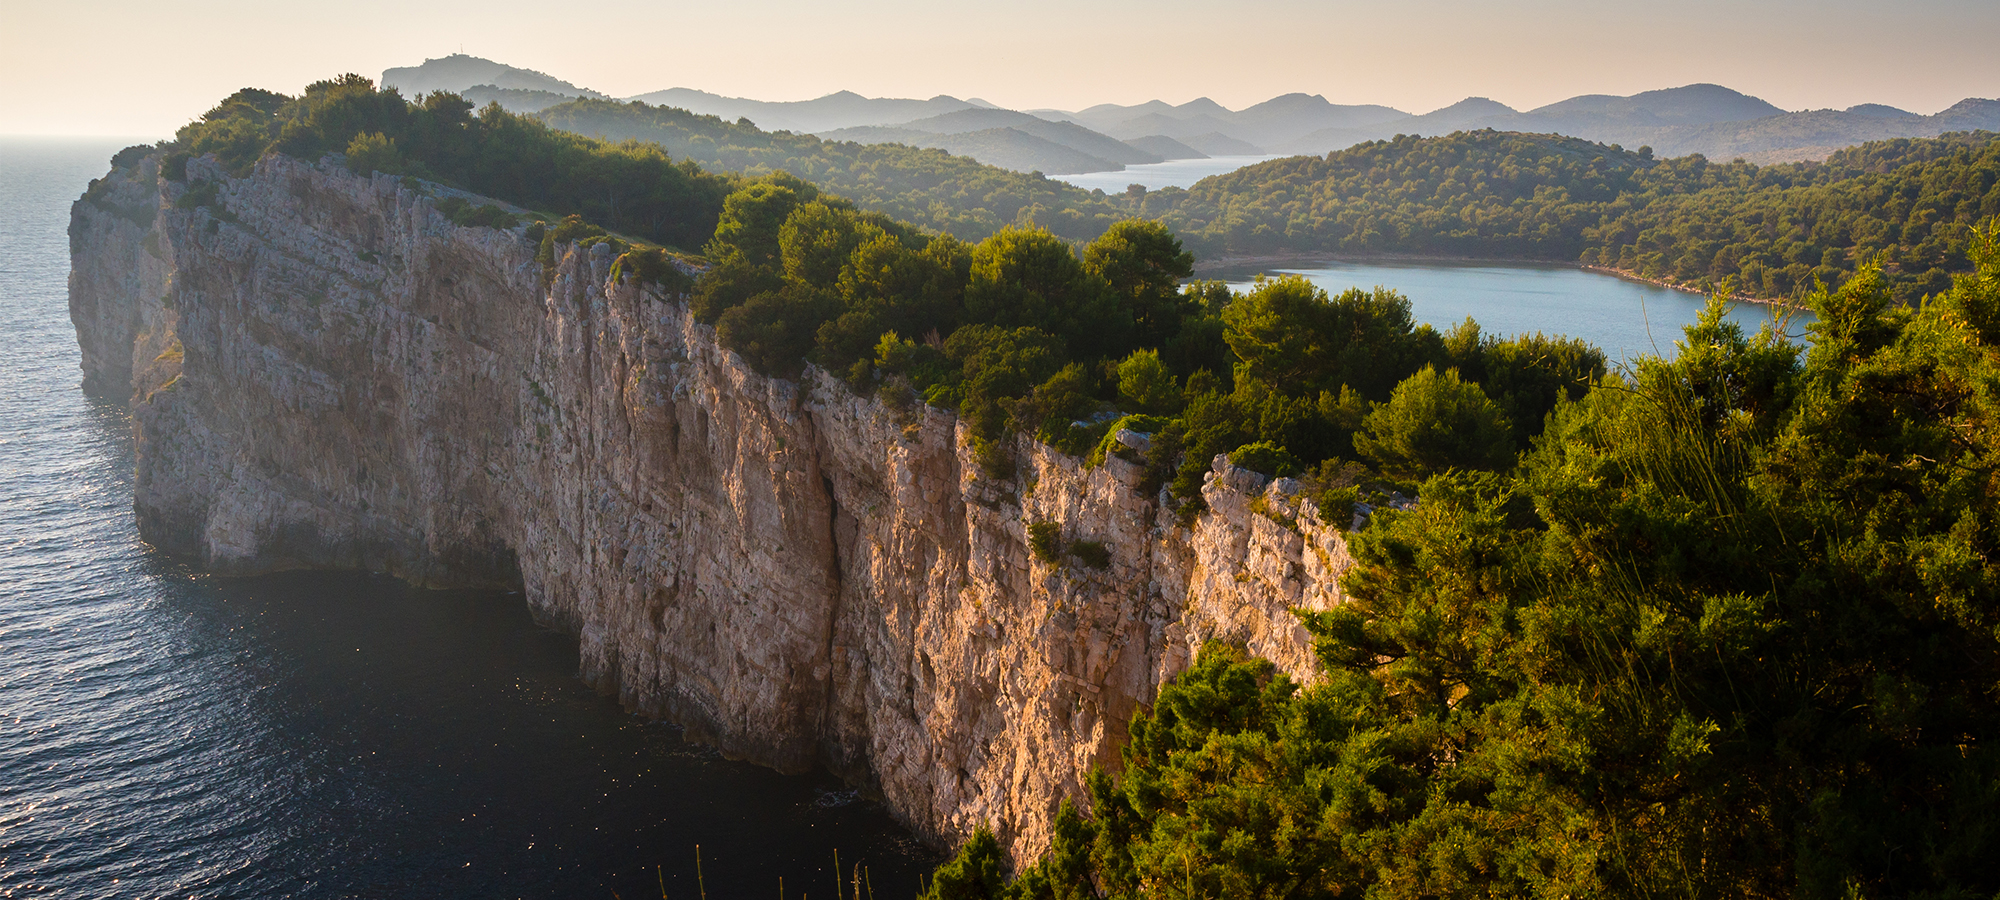 Best Climbing Spots in Southern Croatia